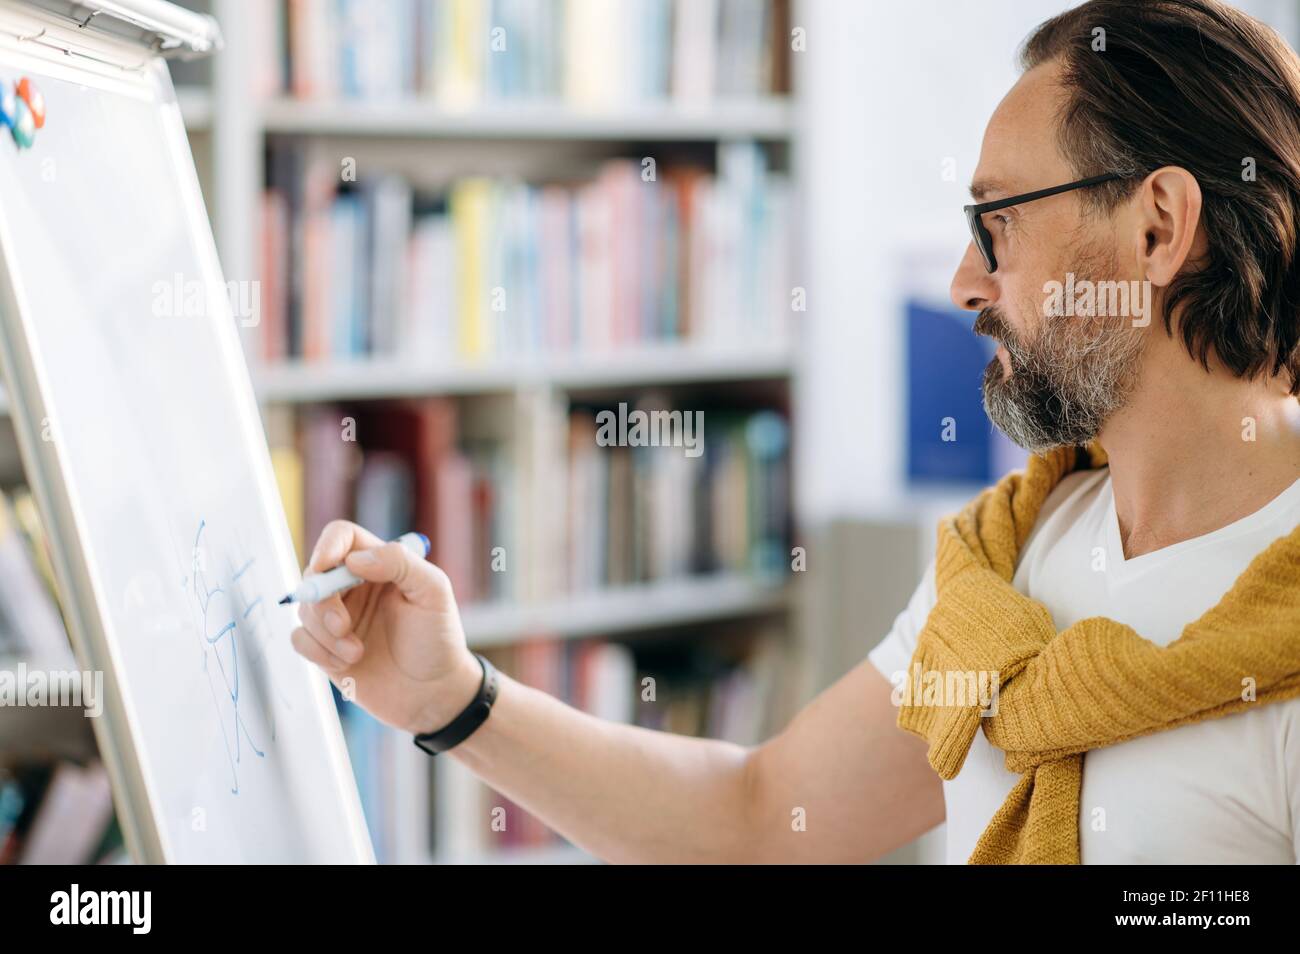 Konzentrierter kluger Kaukasier mittleren Alters, Lehrer oder Geschäftsleiter, schreibt Informationen auf einem Markiertafel während eines Vortrags Stockfoto